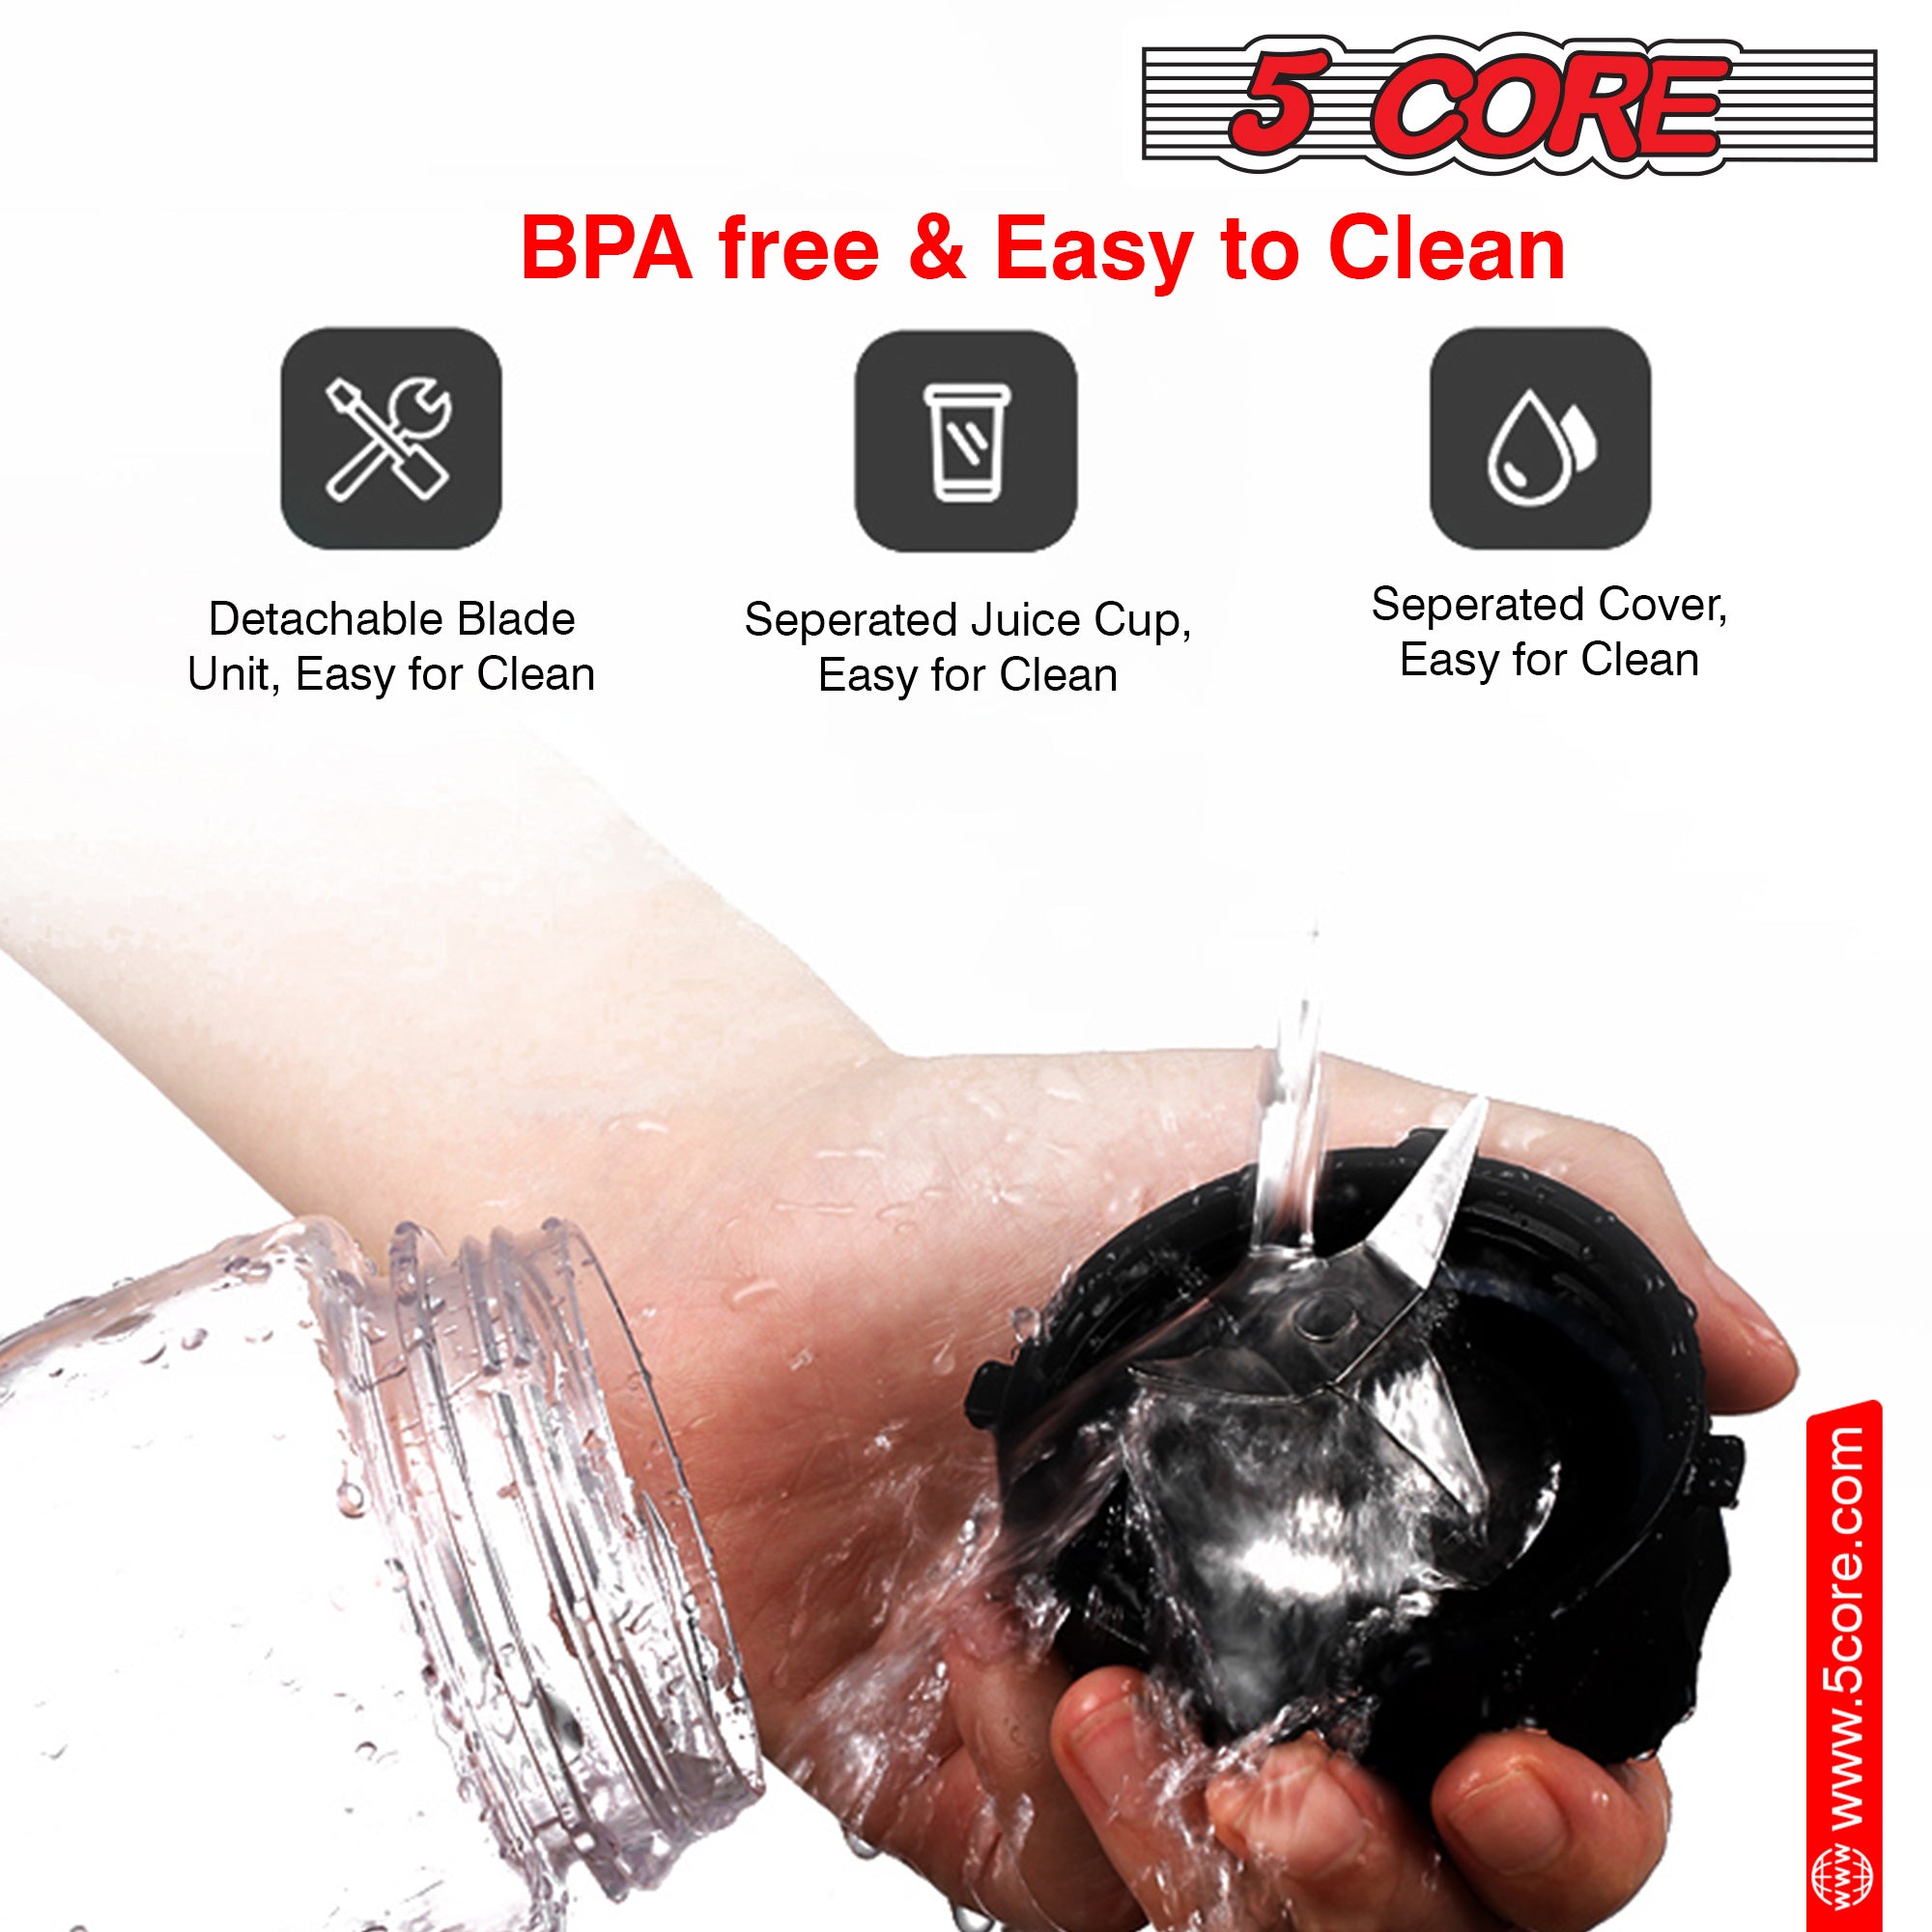 bpa free & easy to clean blender